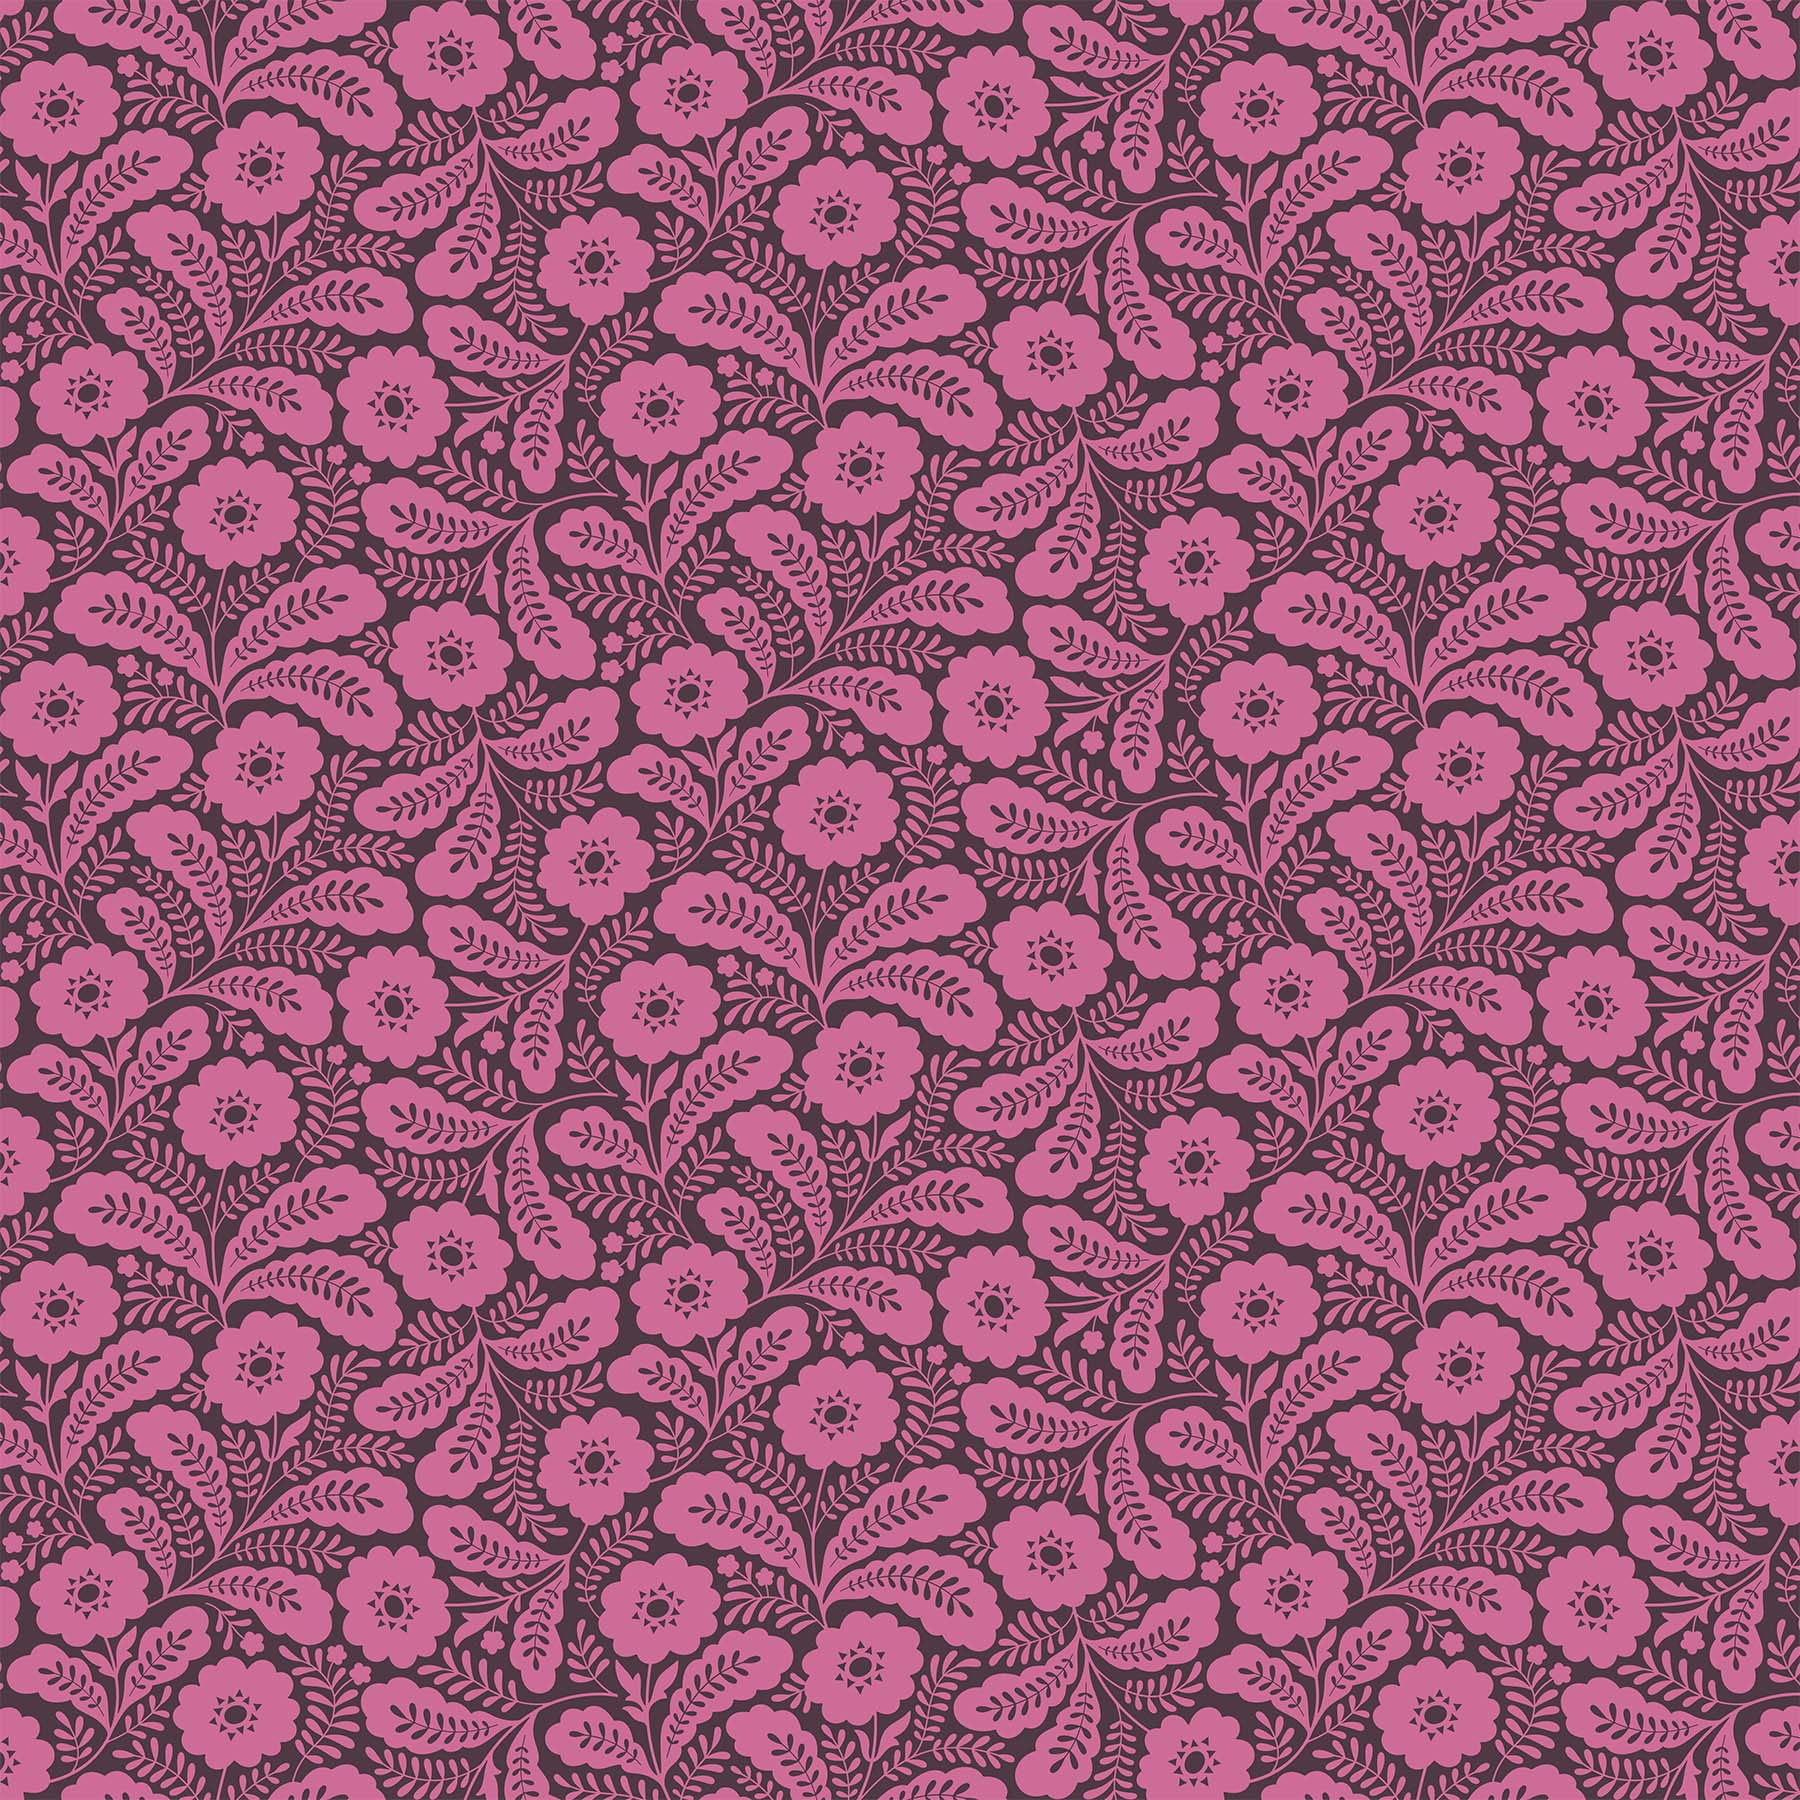 Local Honey Quilt Fabric - Primrose in Violet Purple - 90660-80